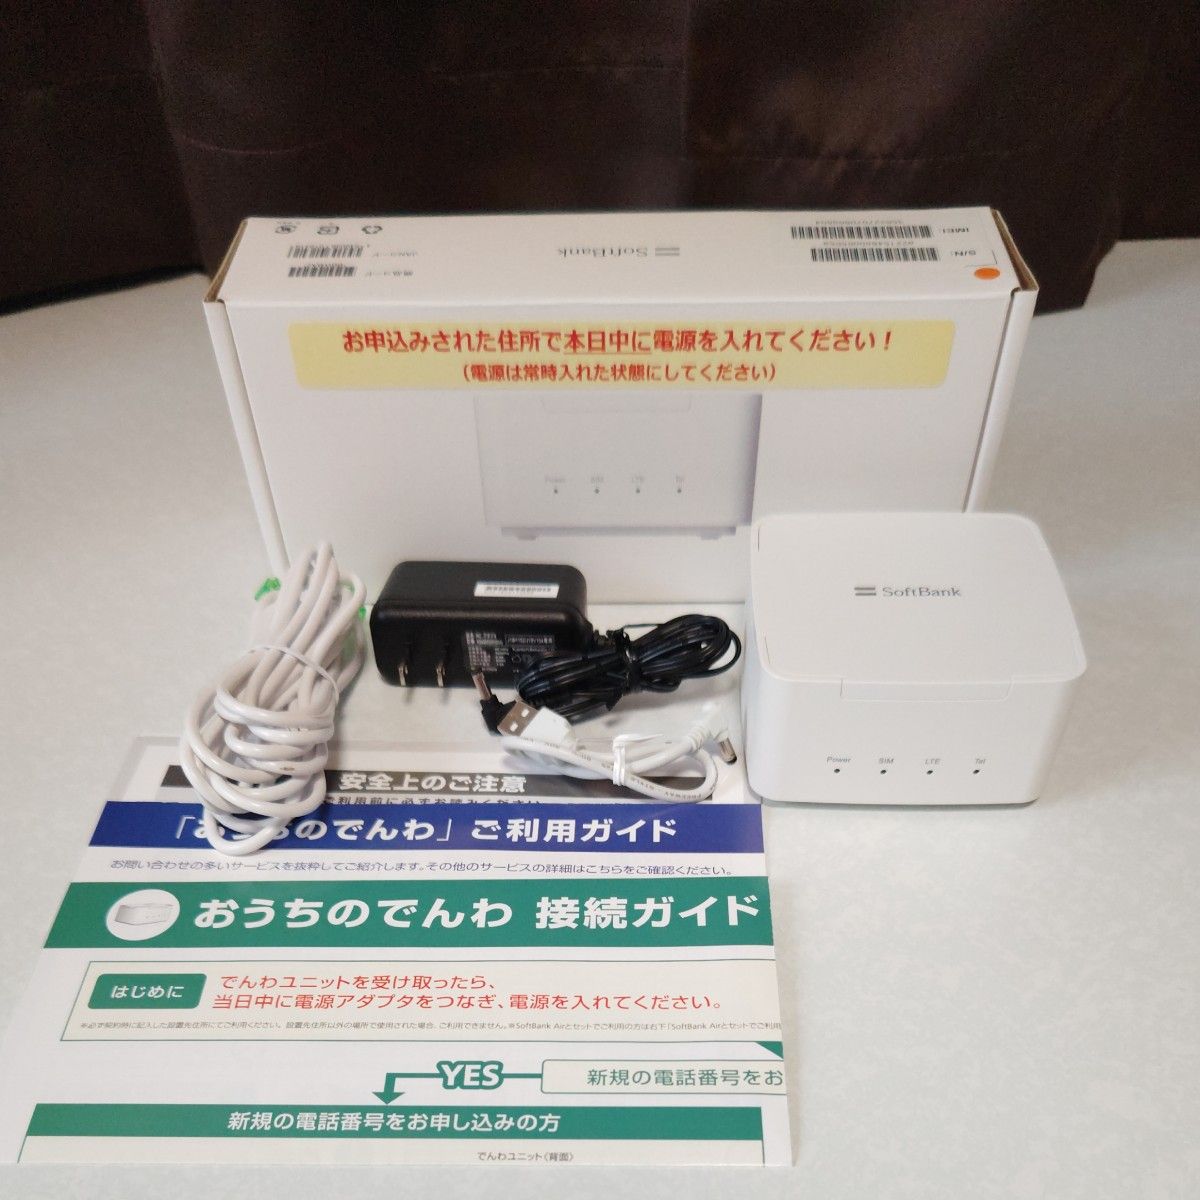 【中古】ソフトバンク Air ターミナル3 Wi-Fi SoftBank Wi-Fiルーター B610s-79a